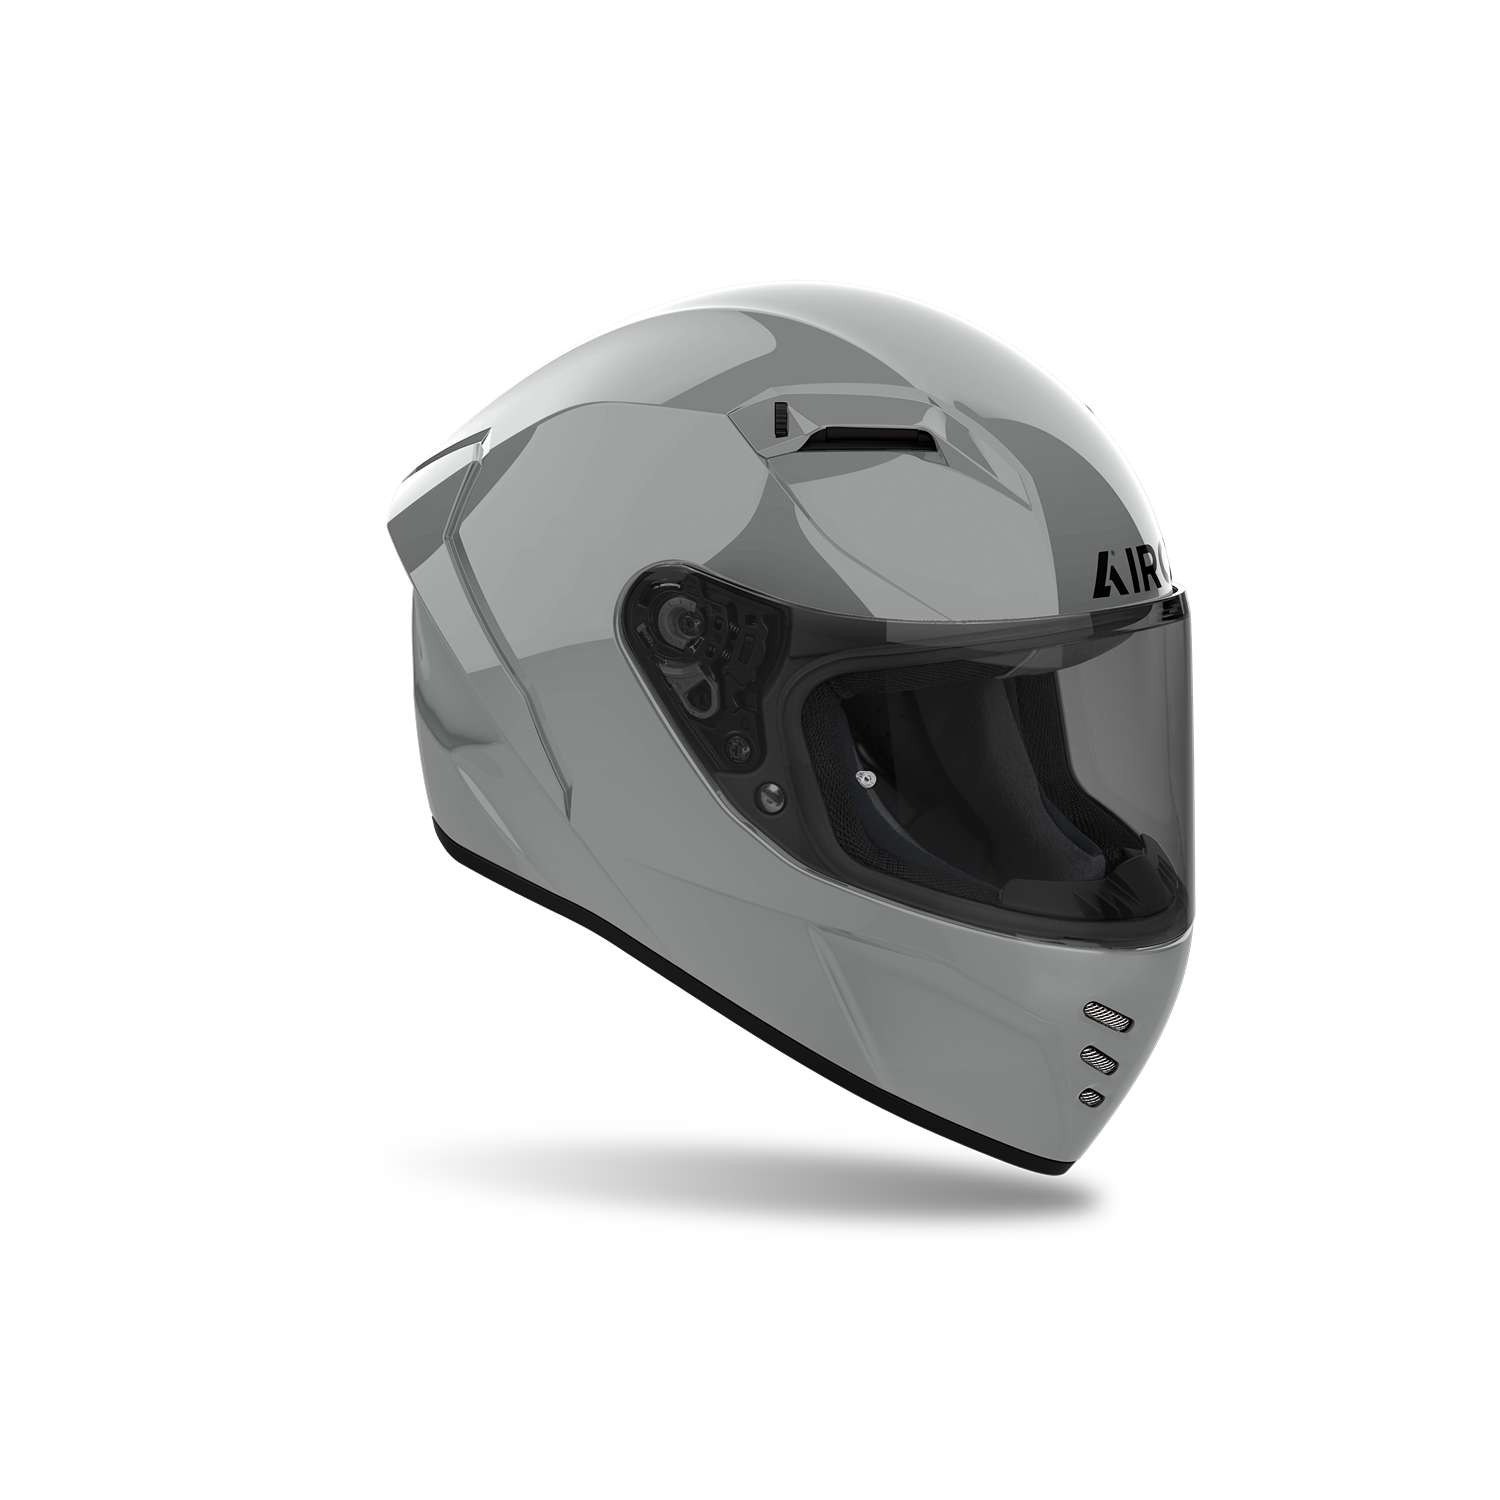 Image of EU Airoh Helmet Connor Light Gray Full Face Helmet Taille S